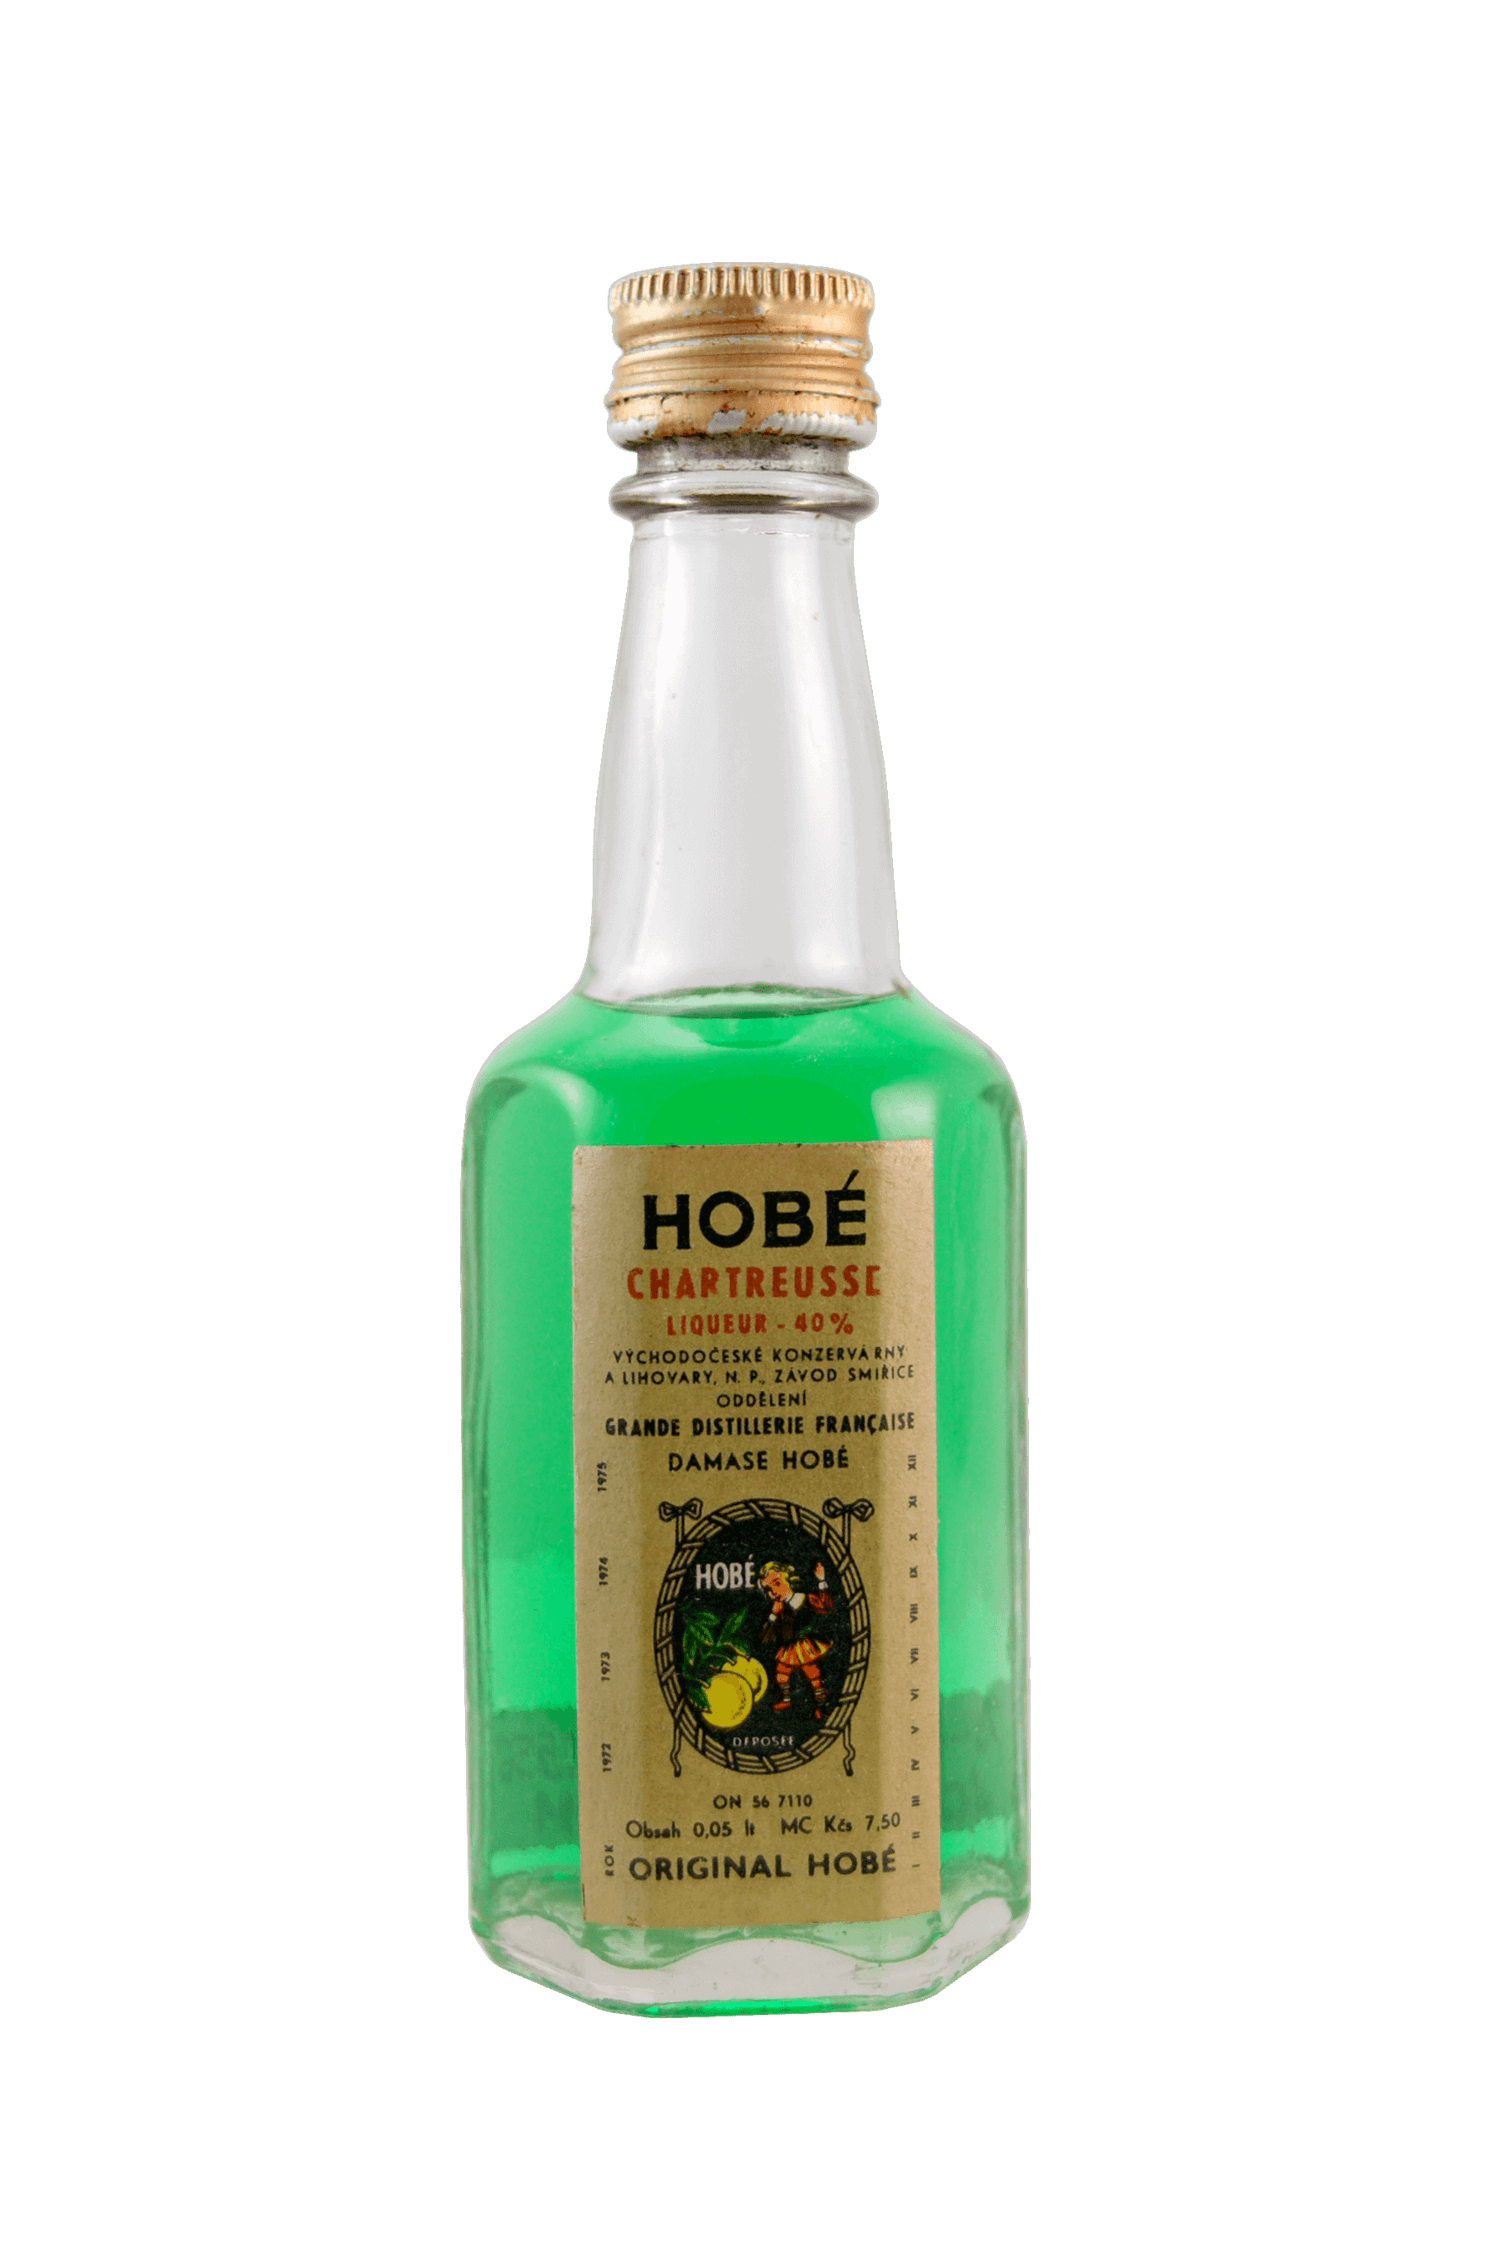 Hobé Chartreusse Liqueur